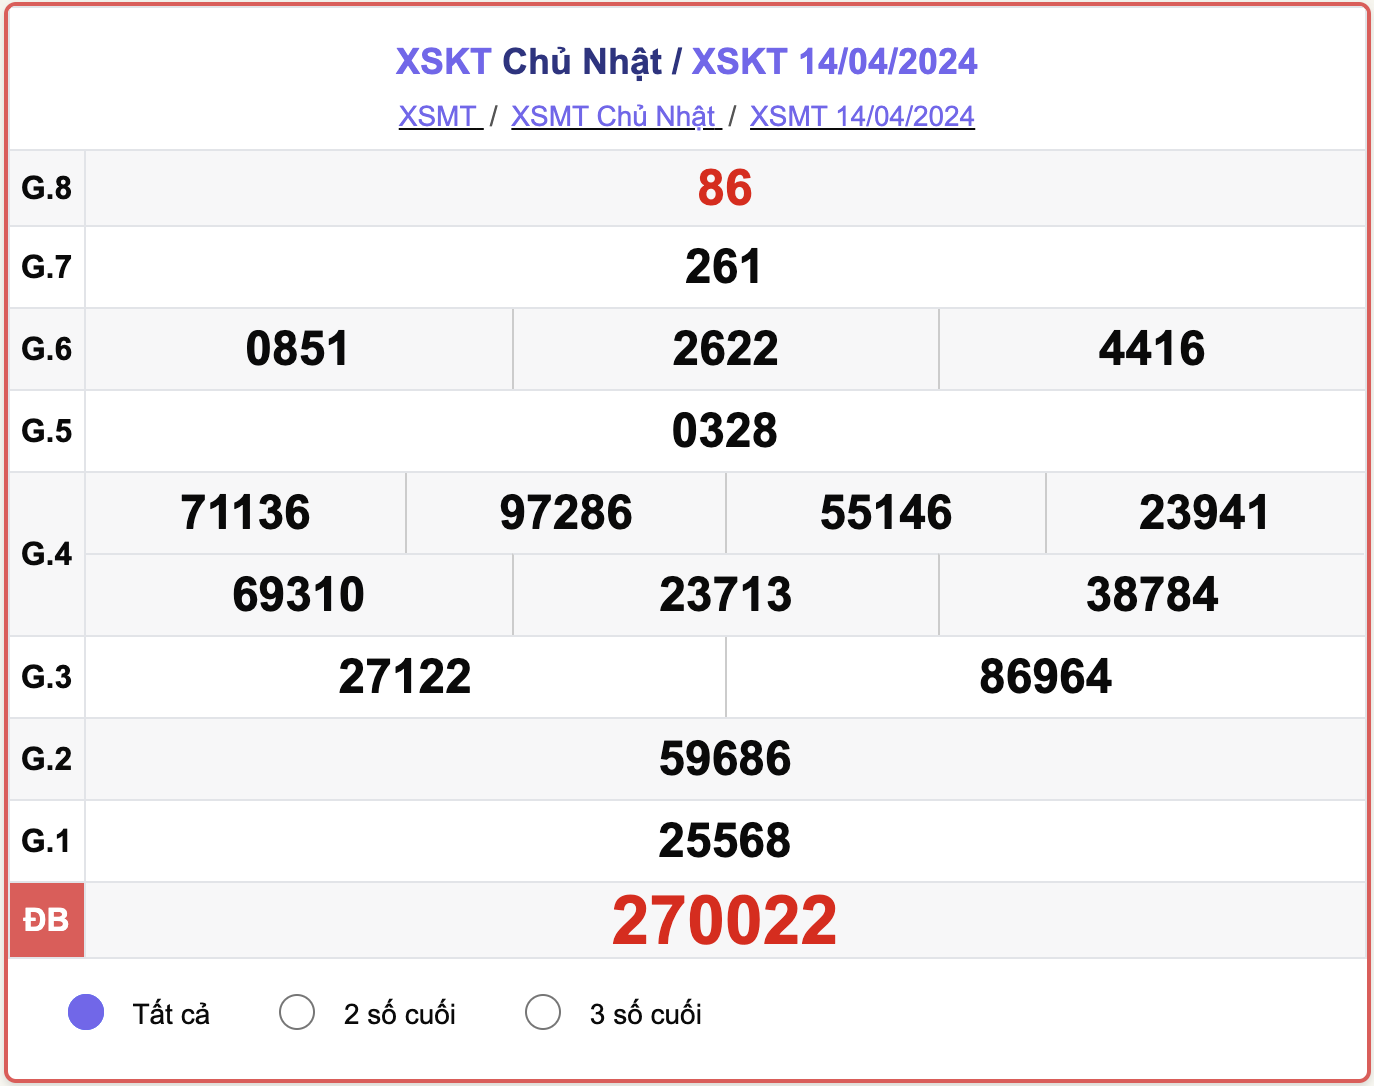 XSKT Chủ nhật, kết quả xổ số Kon Tum ngày 14/4/2024.